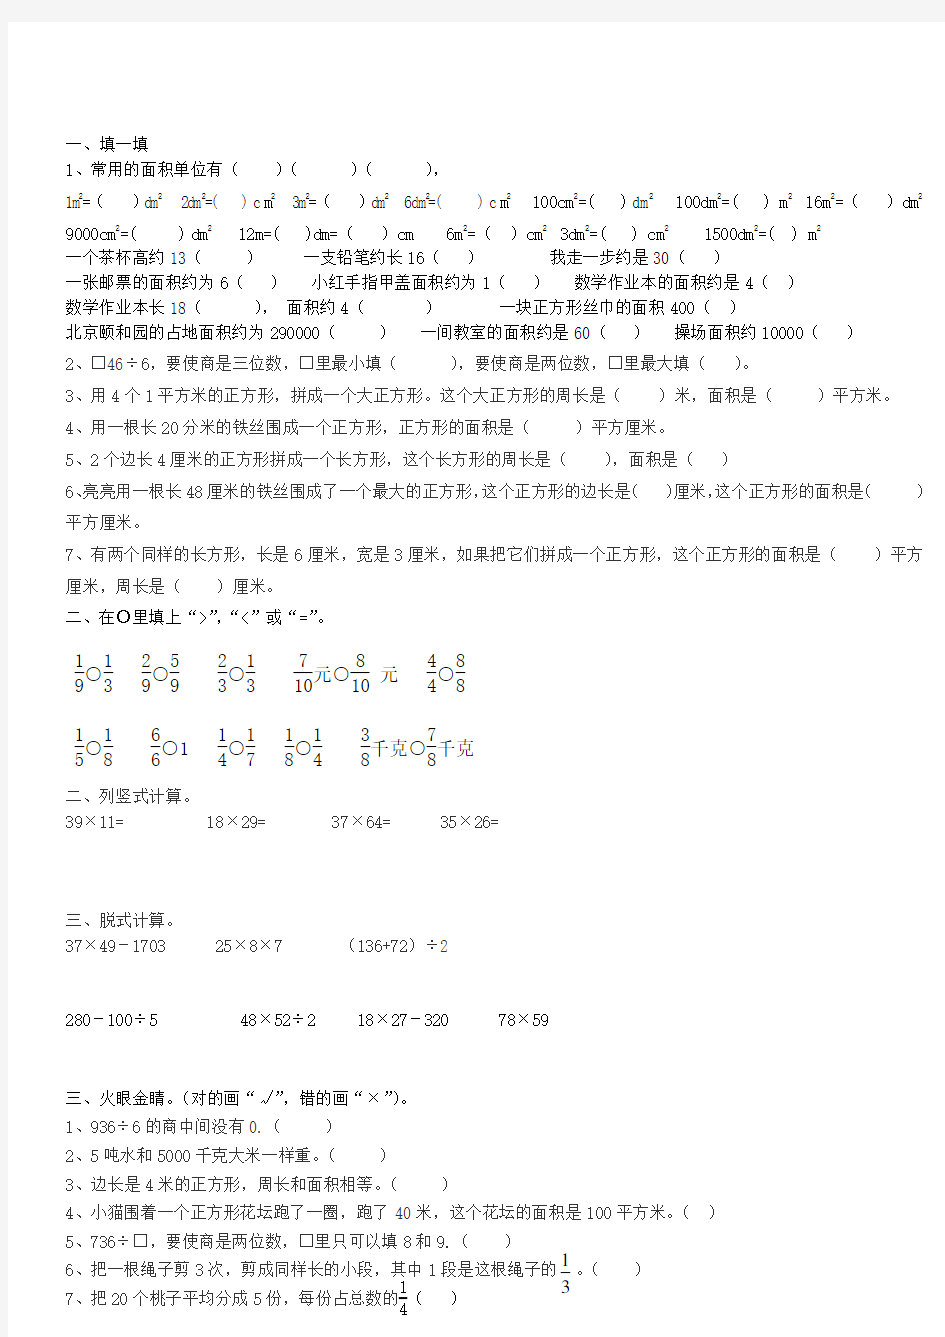 三年级下册数学易错题及难题集锦 (1)